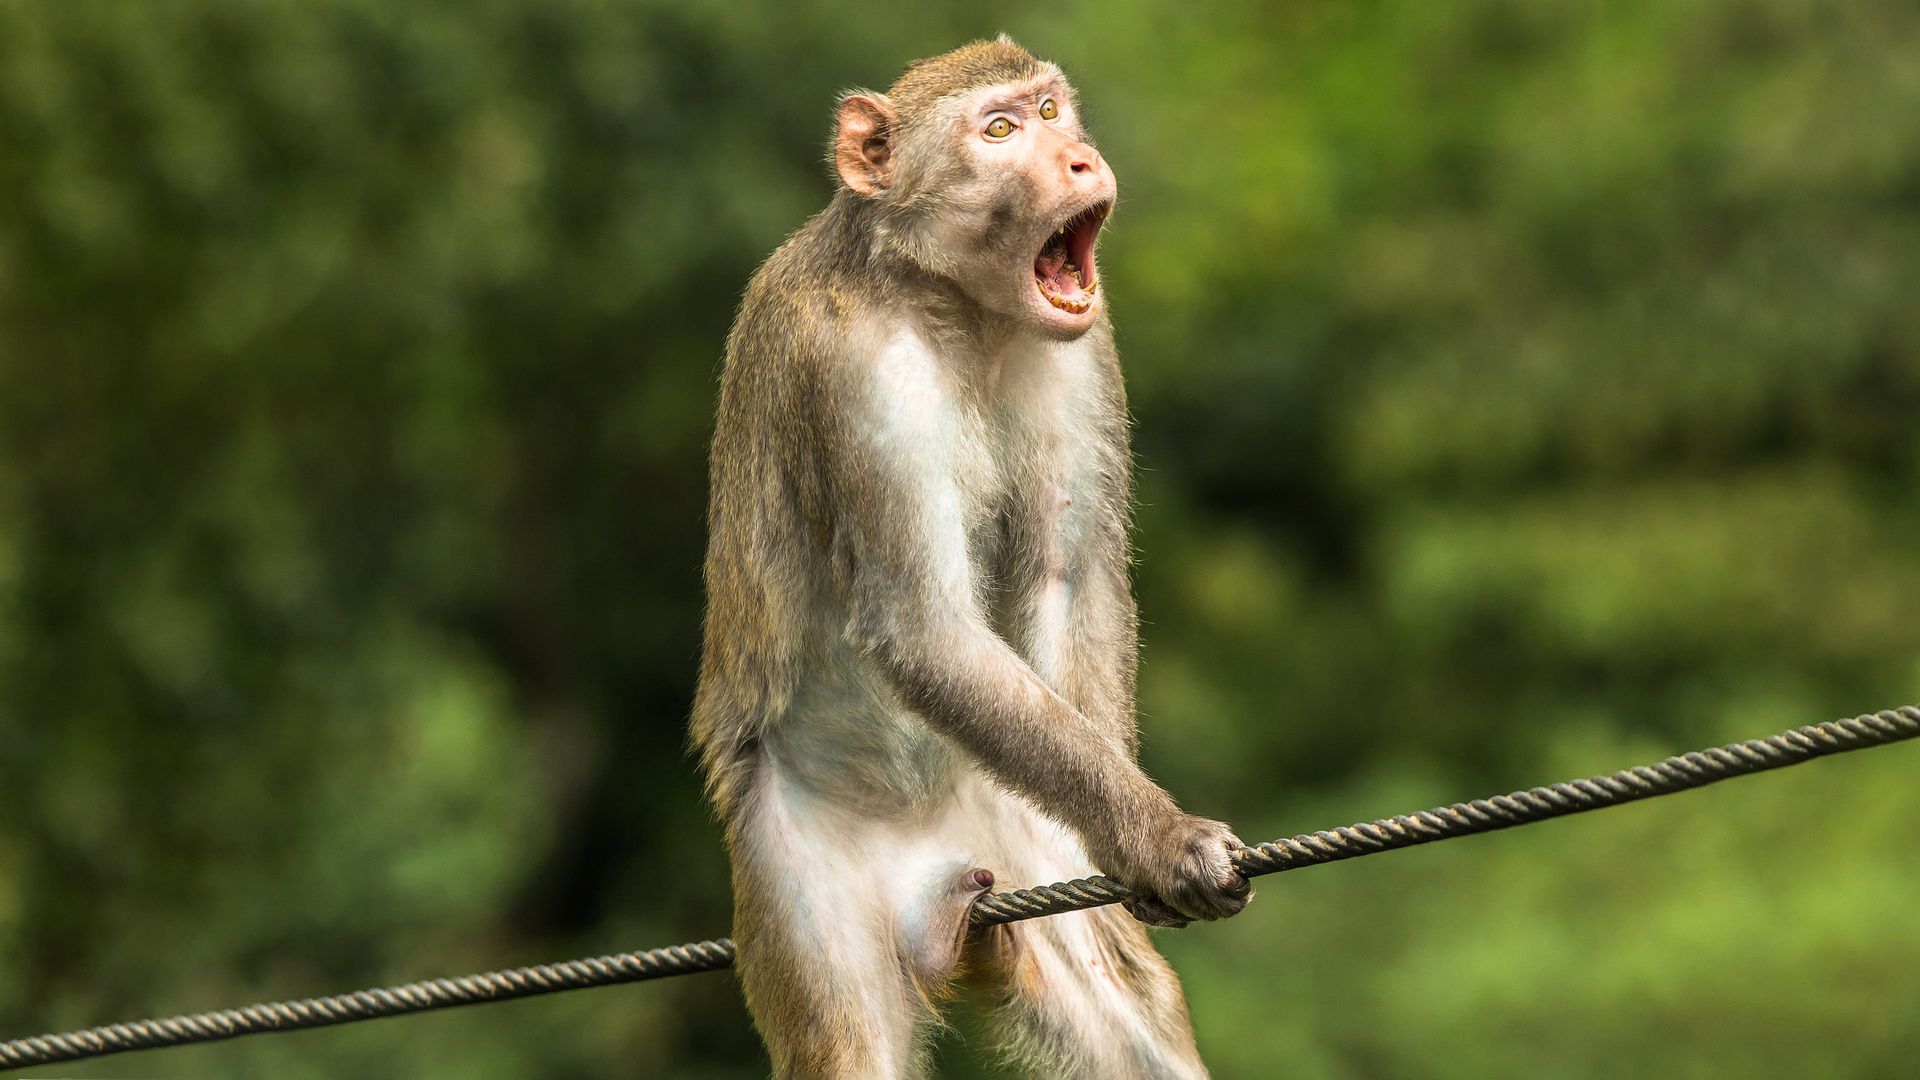 Самые смешные фото с обезьянами